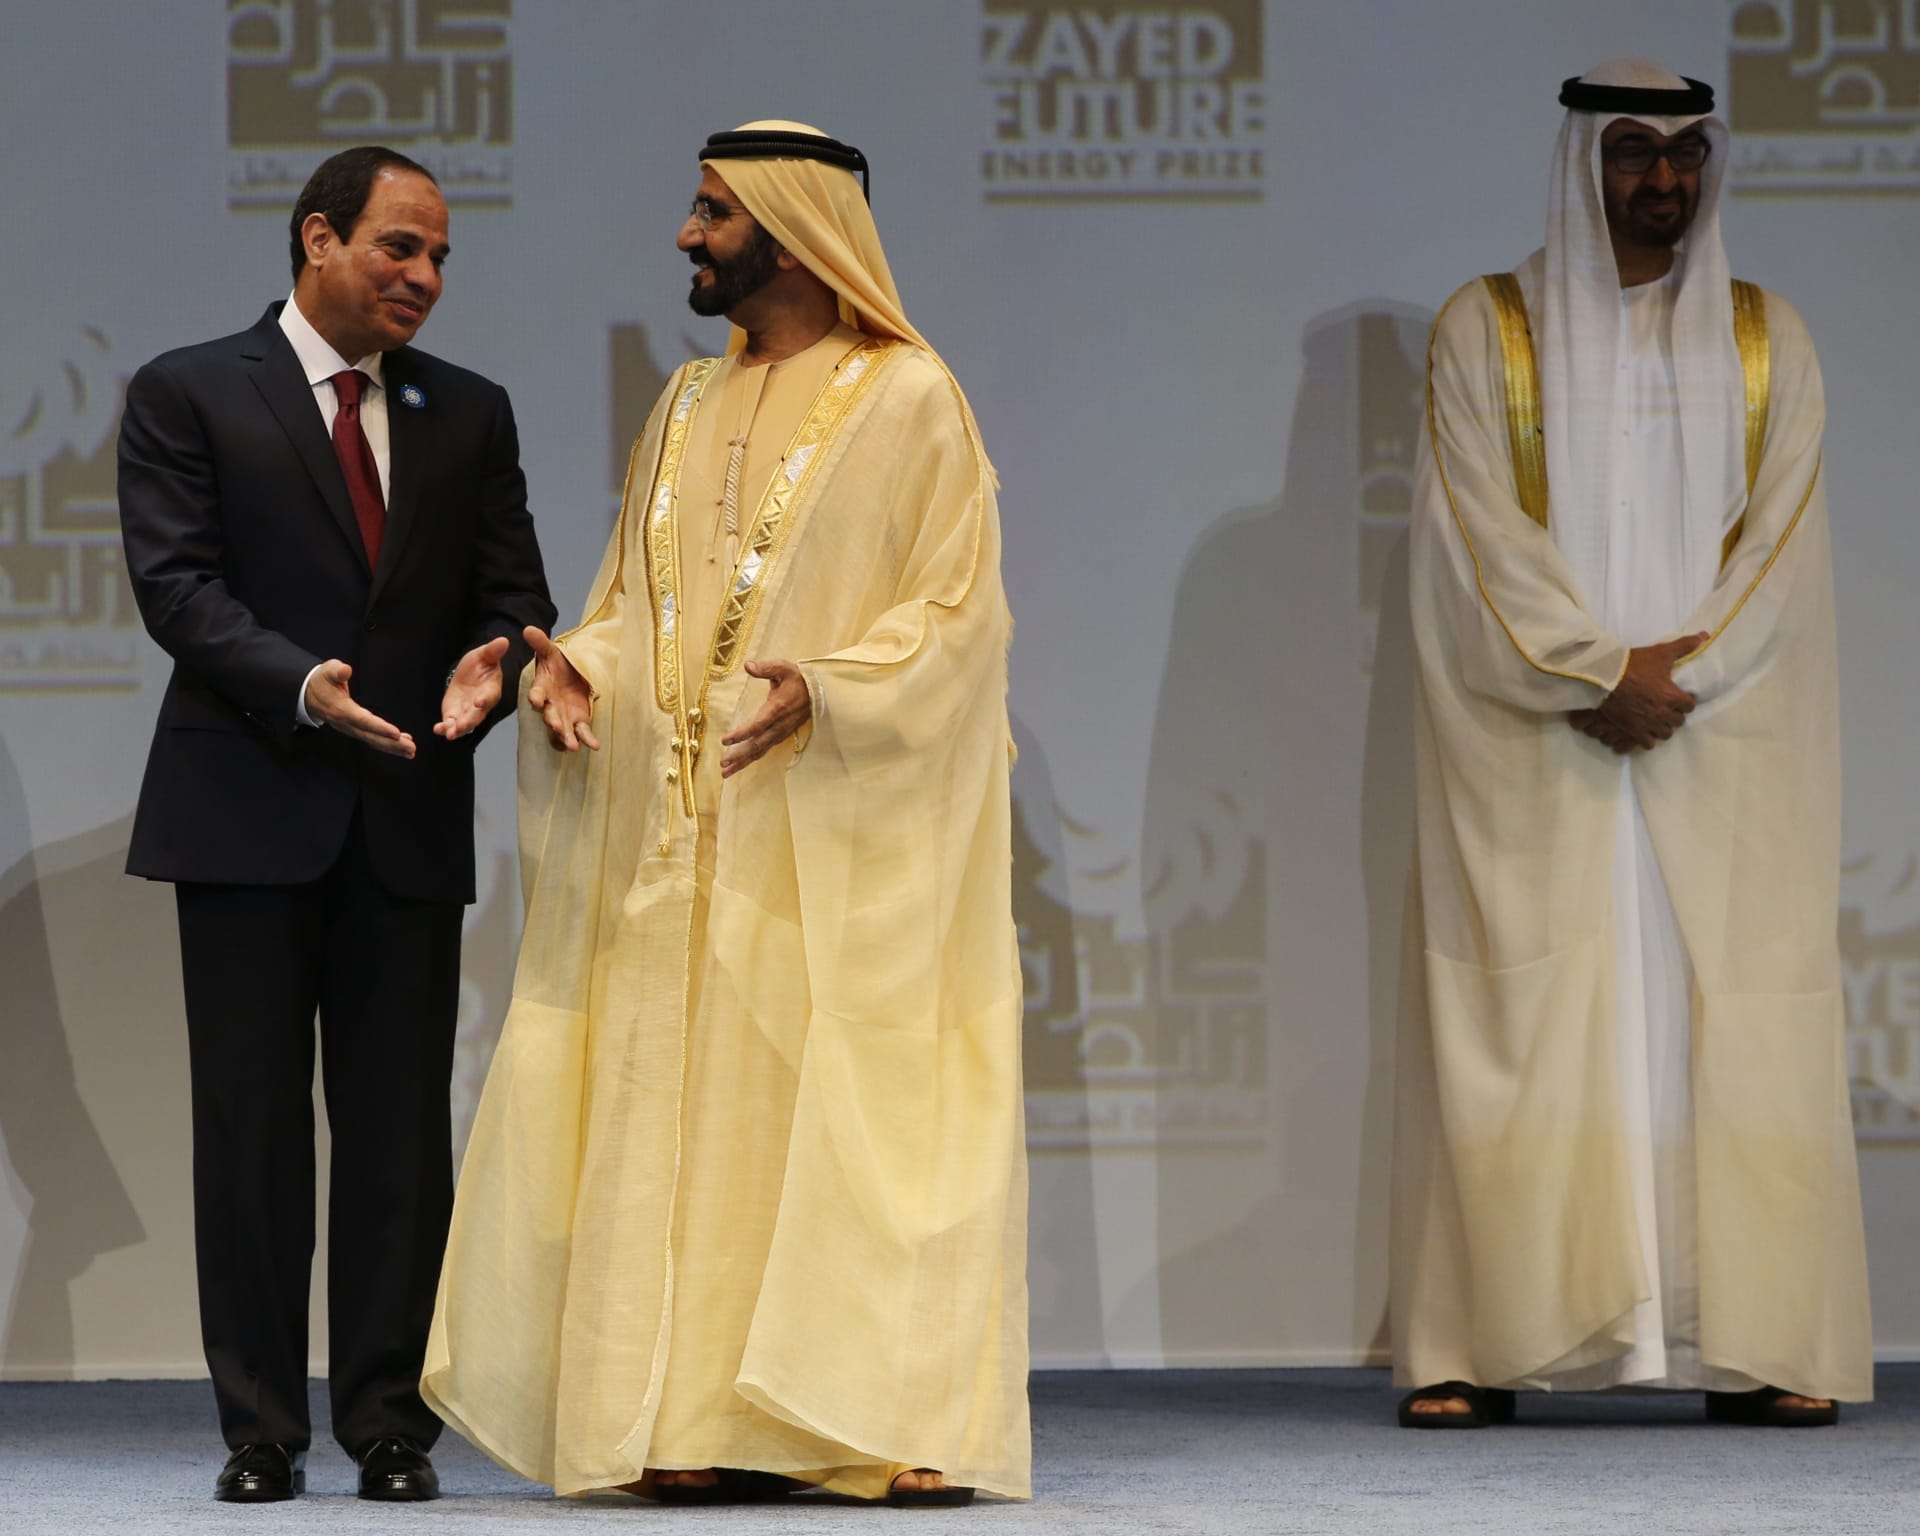 بعد اتفاقيات سعودية مصرية بقيمة 25 مليار دولار بنك الإمارات دبي